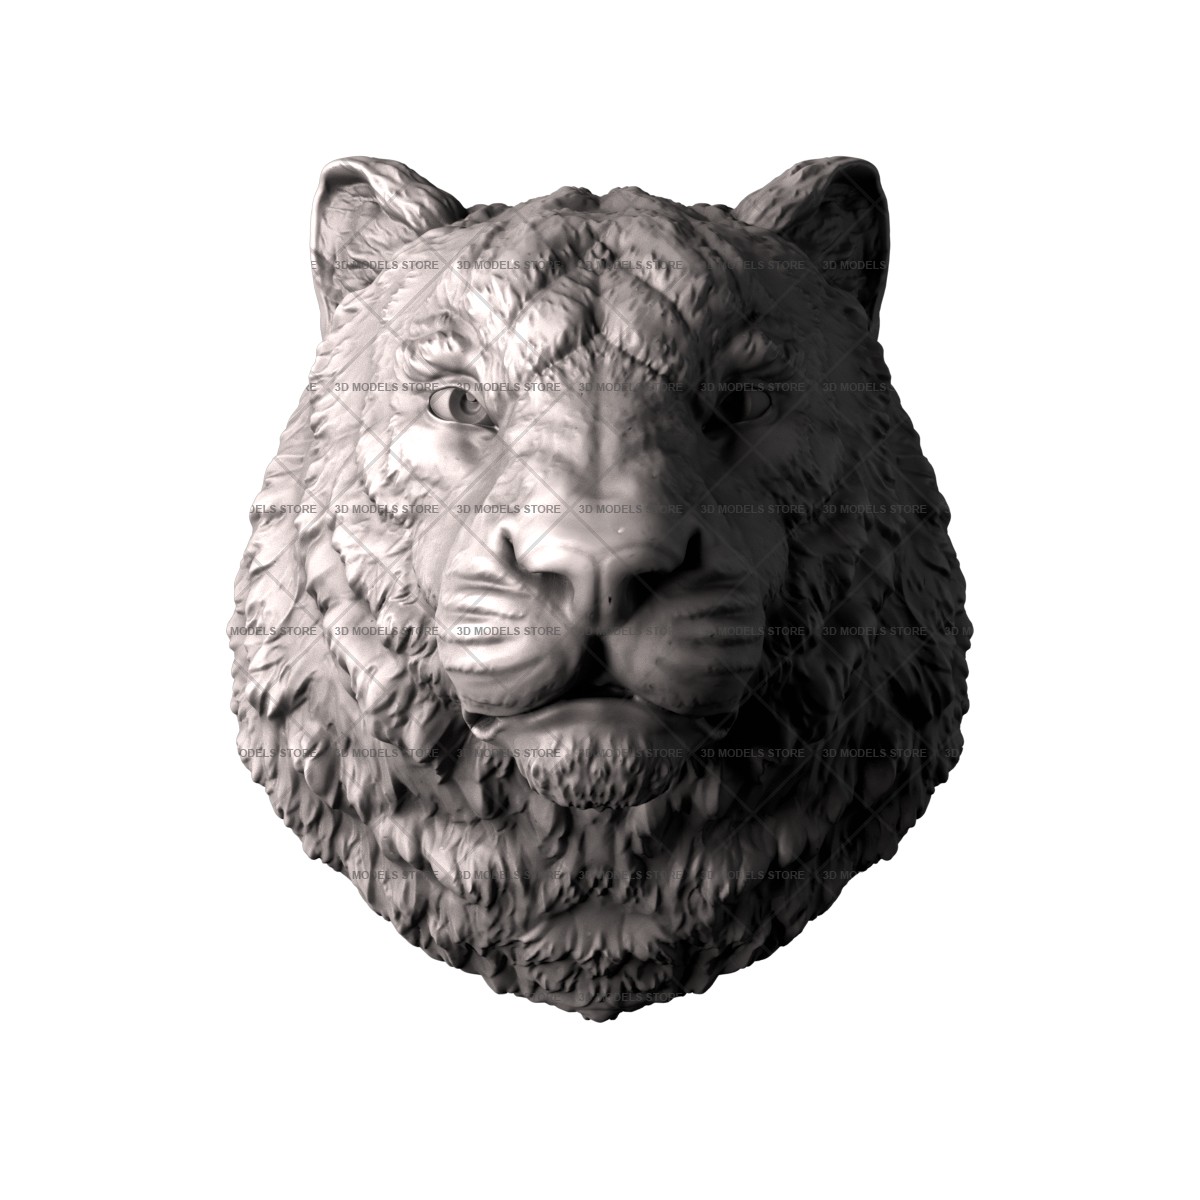 Tigress Sculpture, 3d models (stl)